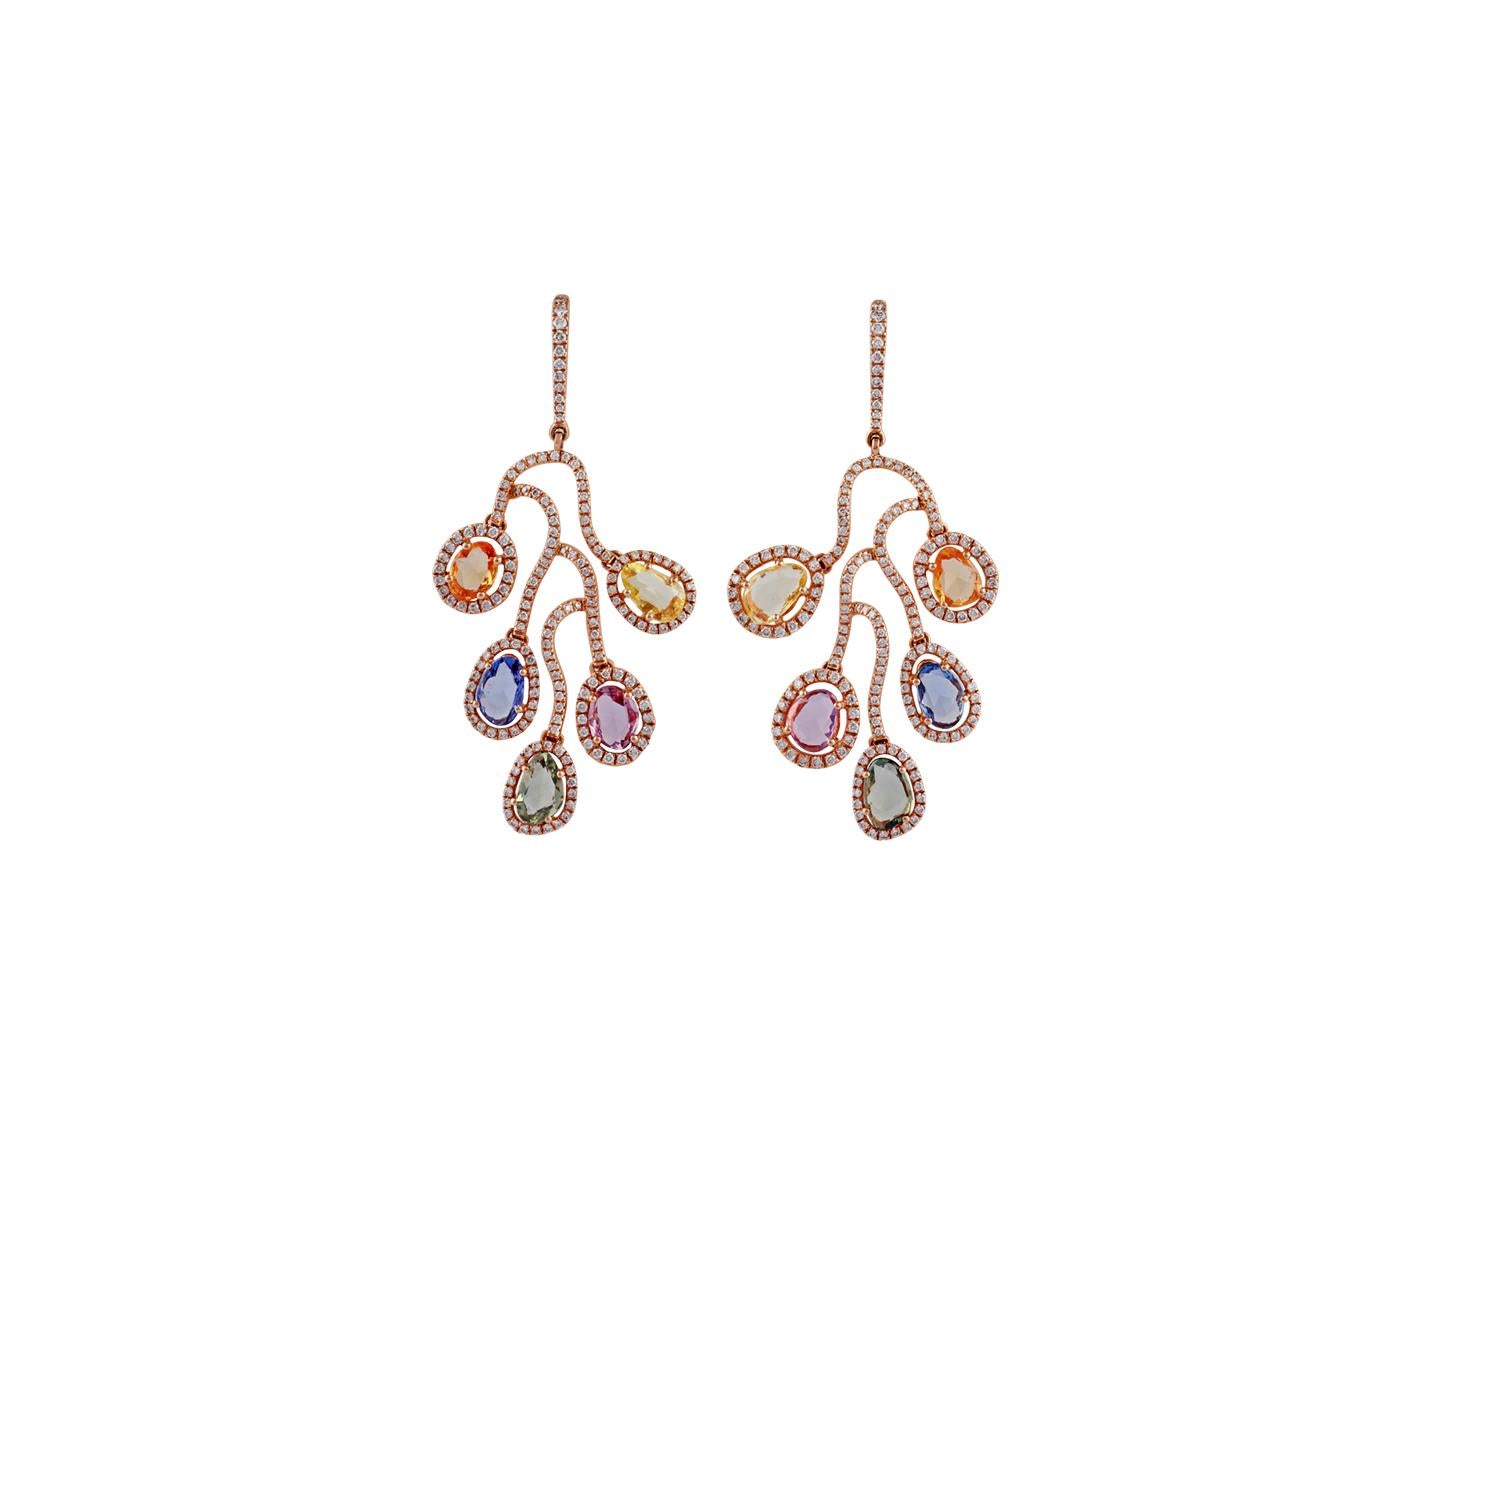 Diese sind eine elegante baumeln Ohrring Paar beschlagen in 18K Roségold verfügt über 10 Stück Rose geschnitten Multi Farbe Saphiren Gewicht 6,62 Karat, mit 350 Stück rund geformte Diamanten Gewicht 1,89 Karat, diese Ohrringe sind ganz in 18K